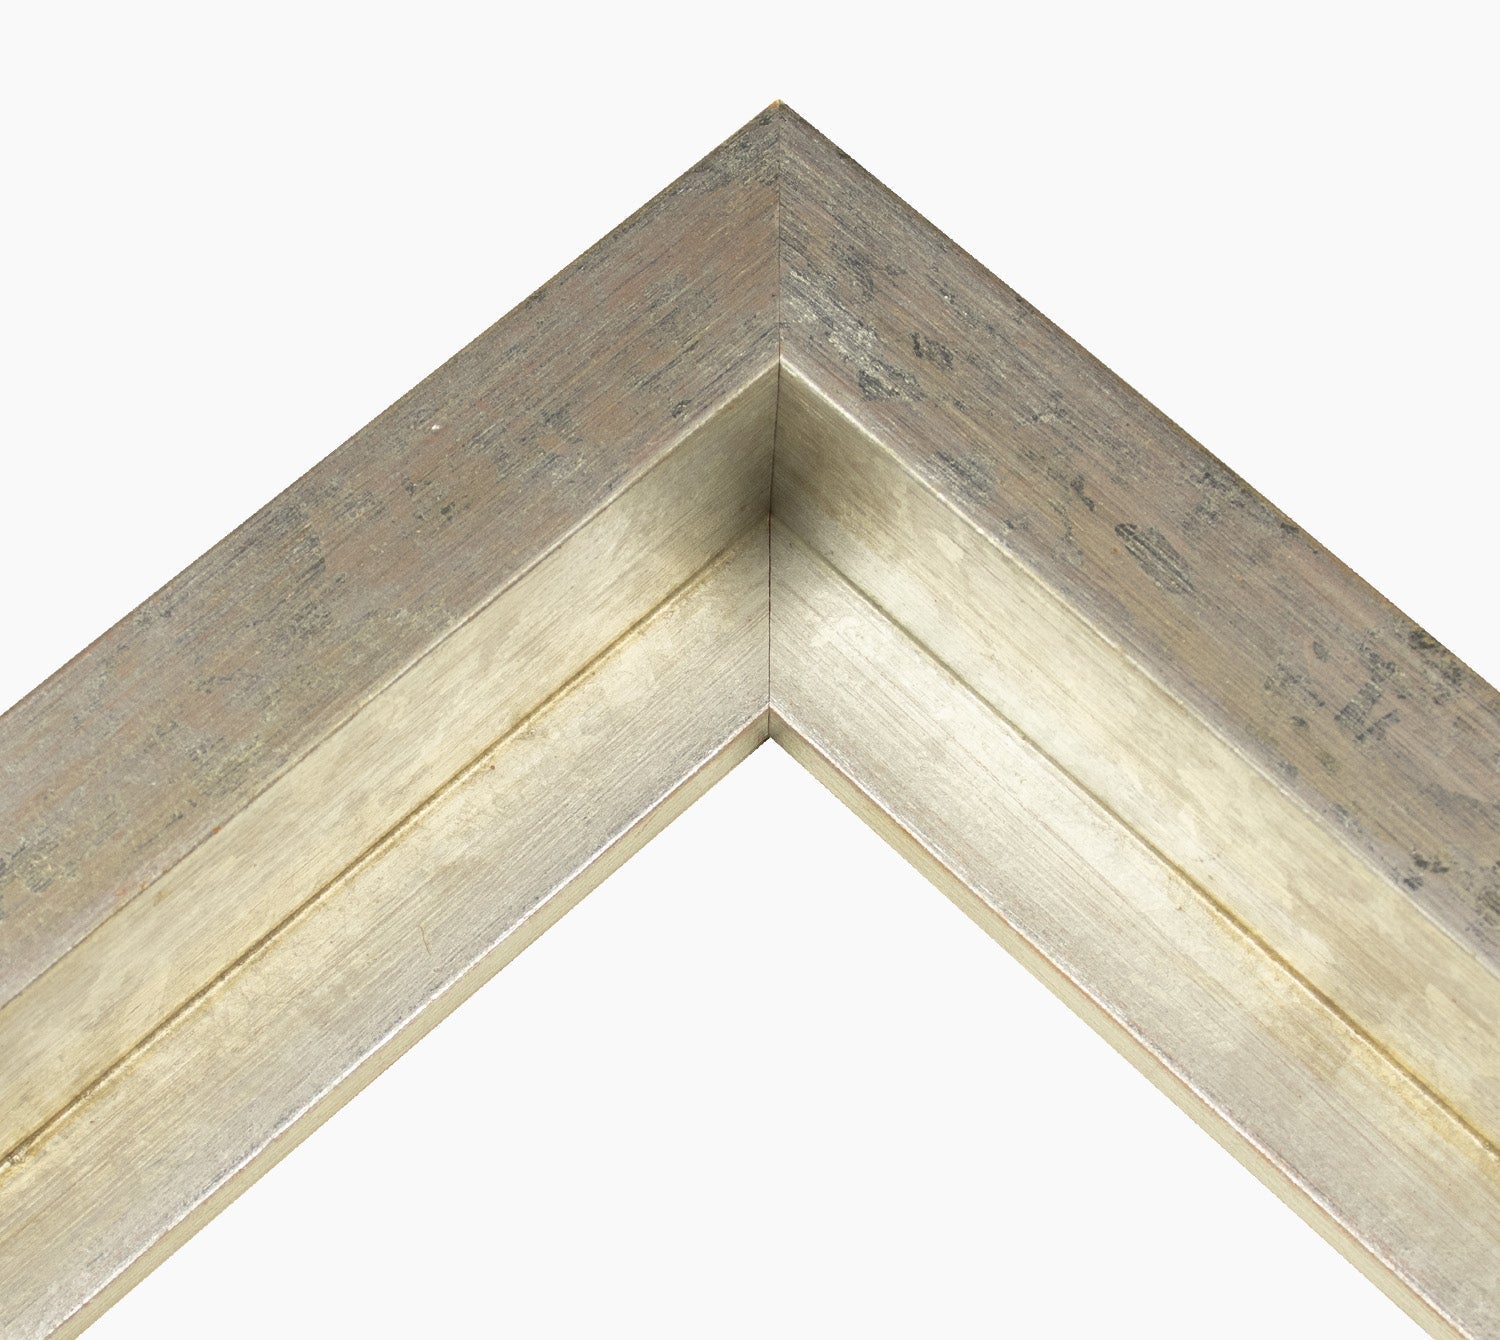 605.301 cadre en bois a la feuille d'argent mesure de profil 60x55 mm Lombarda cornici S.n.c.